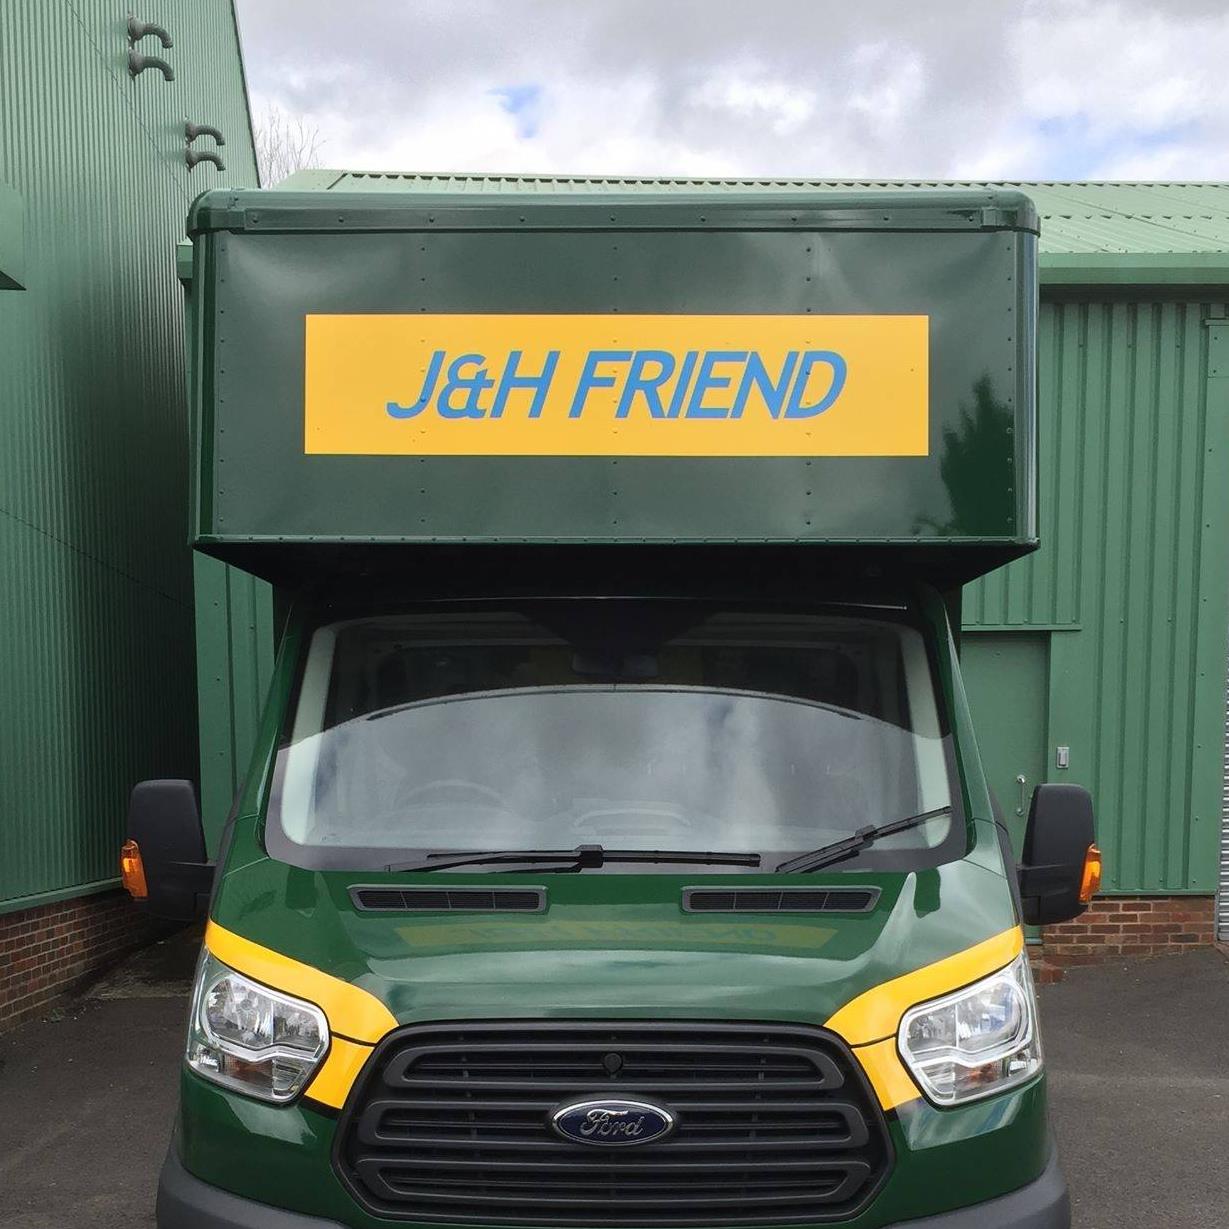 J & H Friend Removals & Storage logo